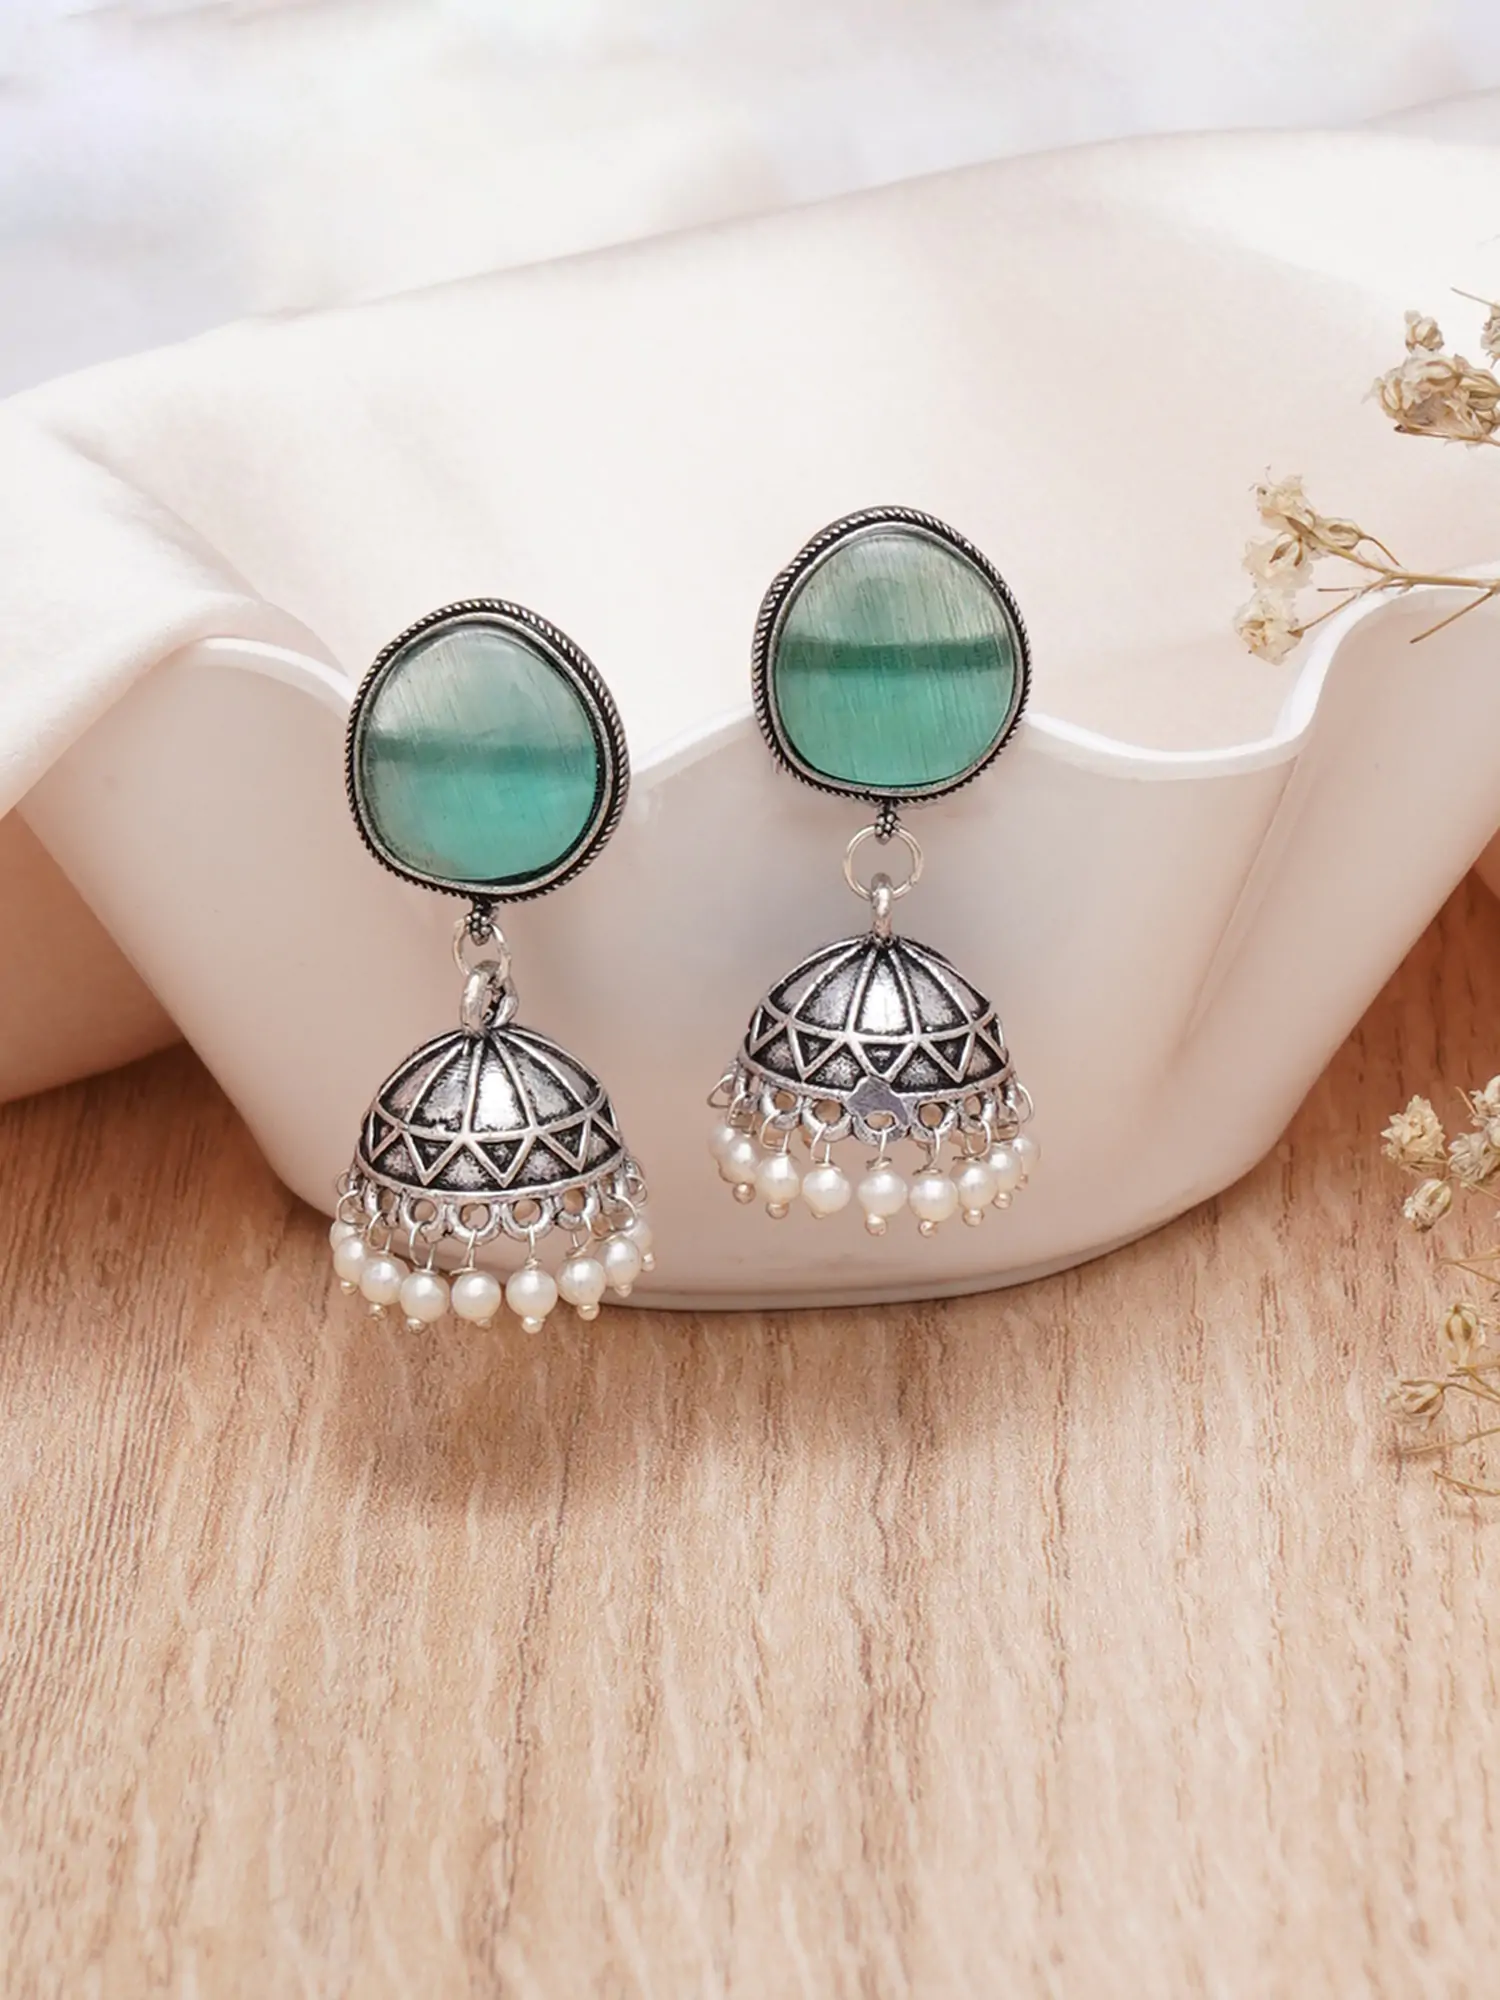 Buy Dome shaped Crystal earrings Online | Bijoux by Priya